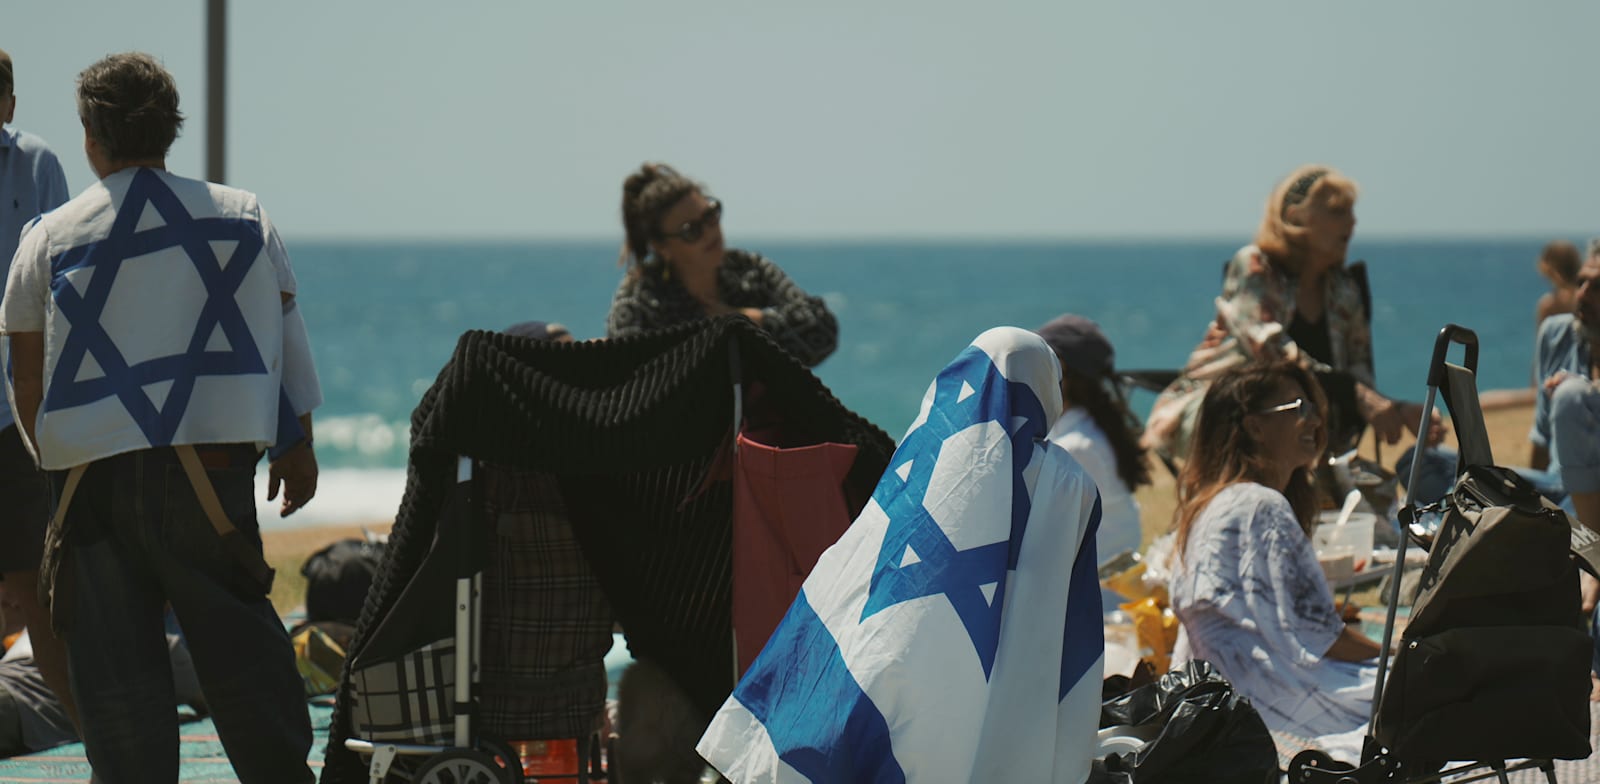 יום העצמאות בחוף בתל אביב השנה. חגגו פחות / צילום: Associated Press, Ohad Zwigenberg